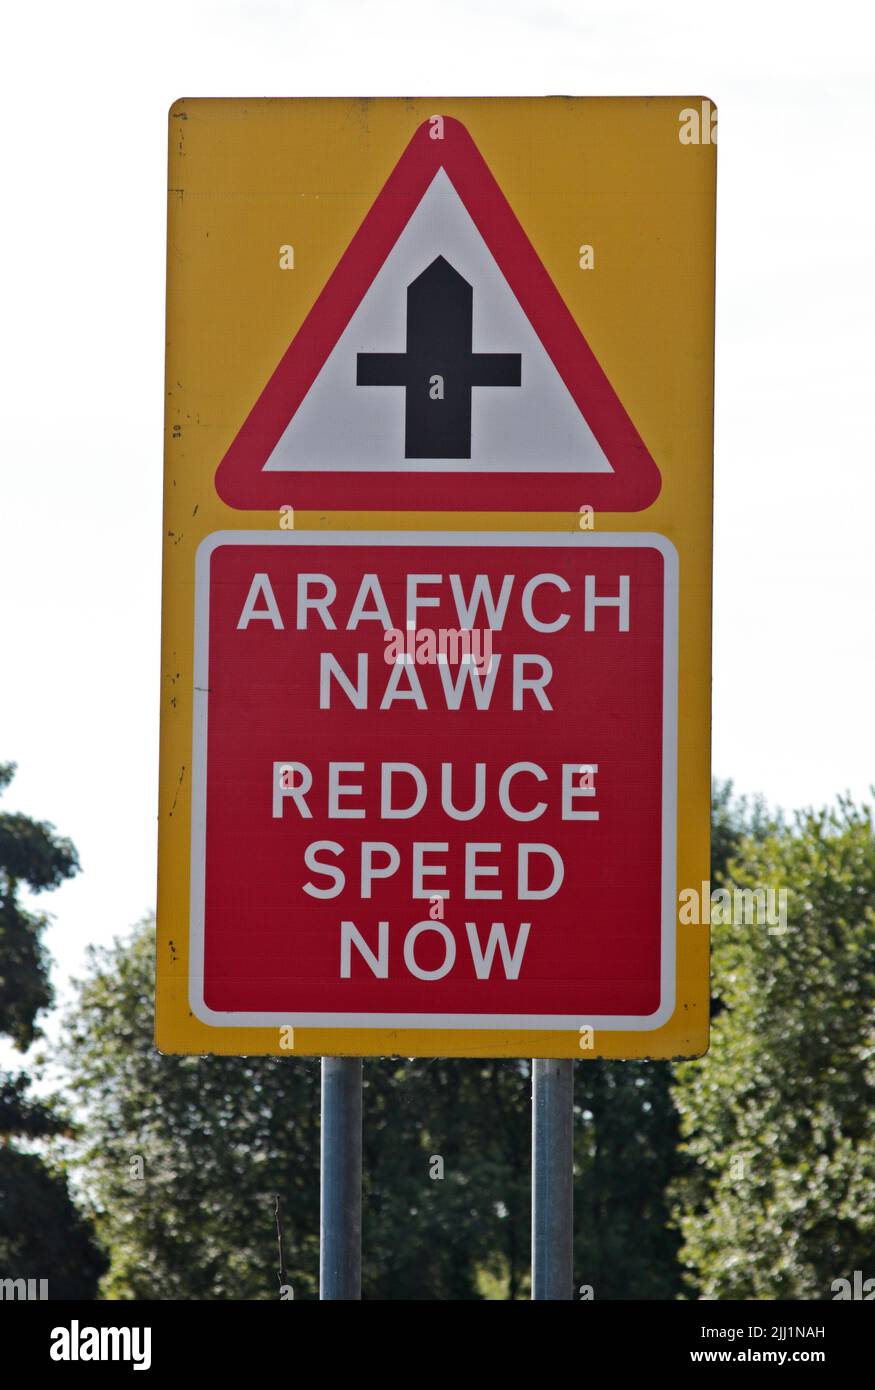 Señal de reducción de velocidad ahora, Norte de Gales Foto de stock